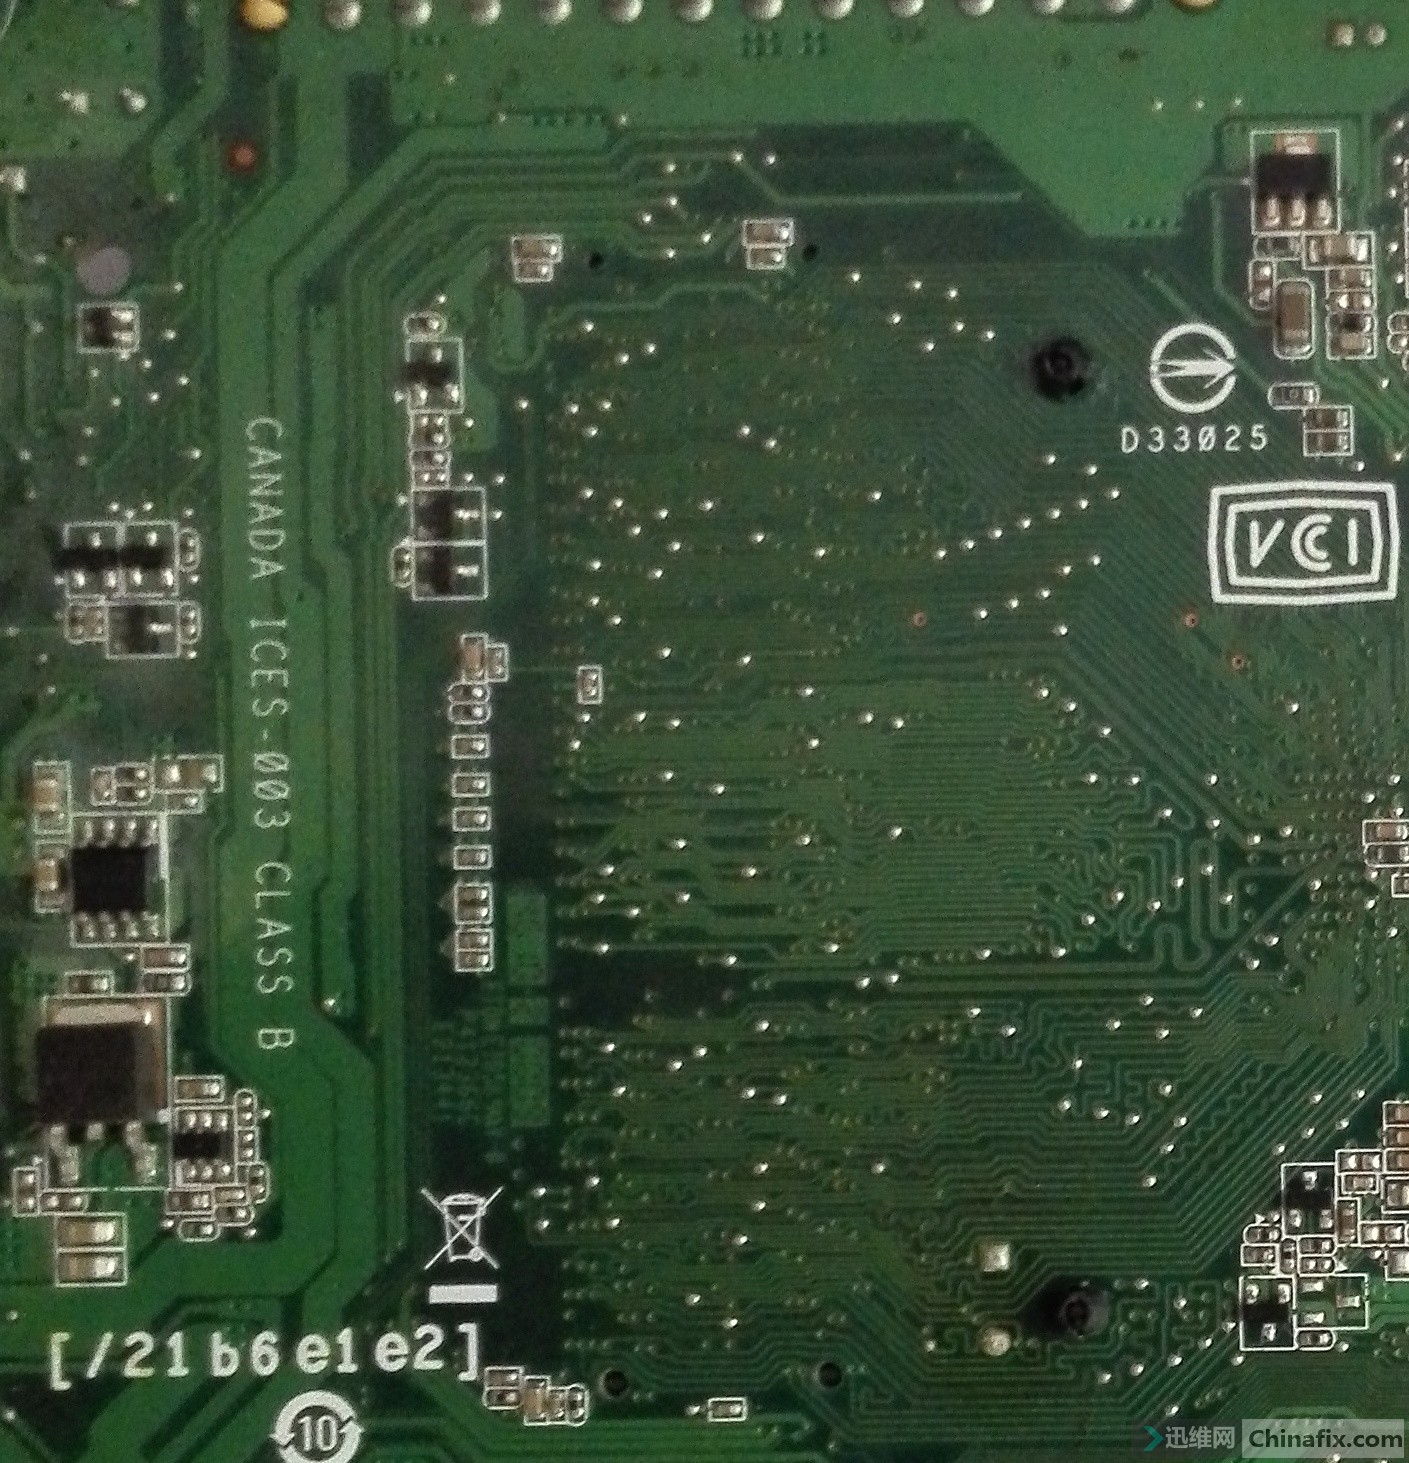 intel desktop board d33025